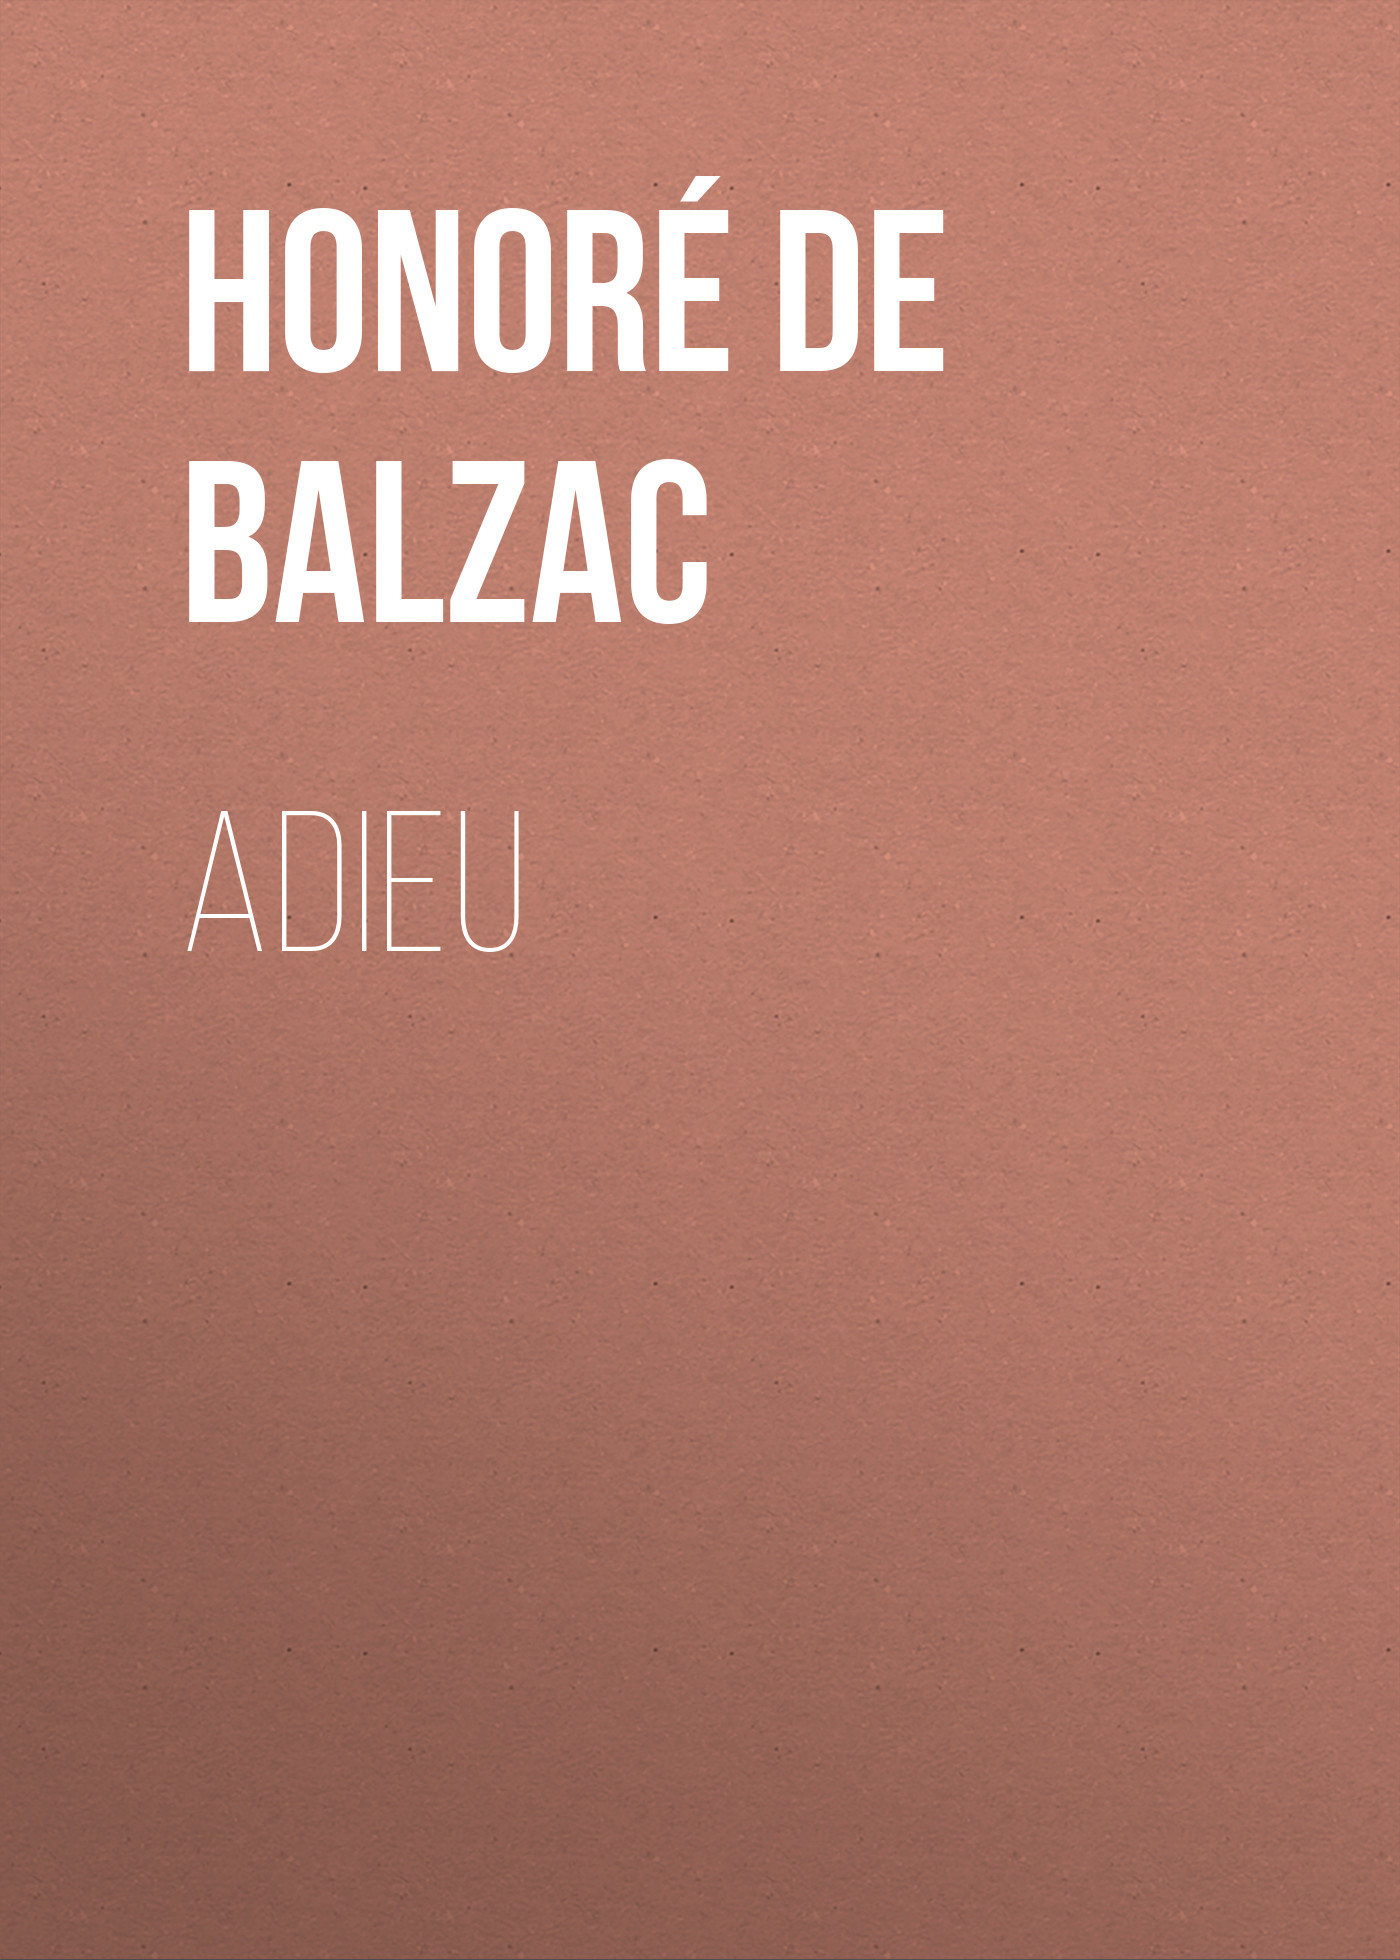 Книга Adieu из серии , созданная Honoré Balzac, может относится к жанру Литература 19 века, Зарубежная старинная литература, Зарубежная классика. Стоимость электронной книги Adieu с идентификатором 25020963 составляет 0 руб.